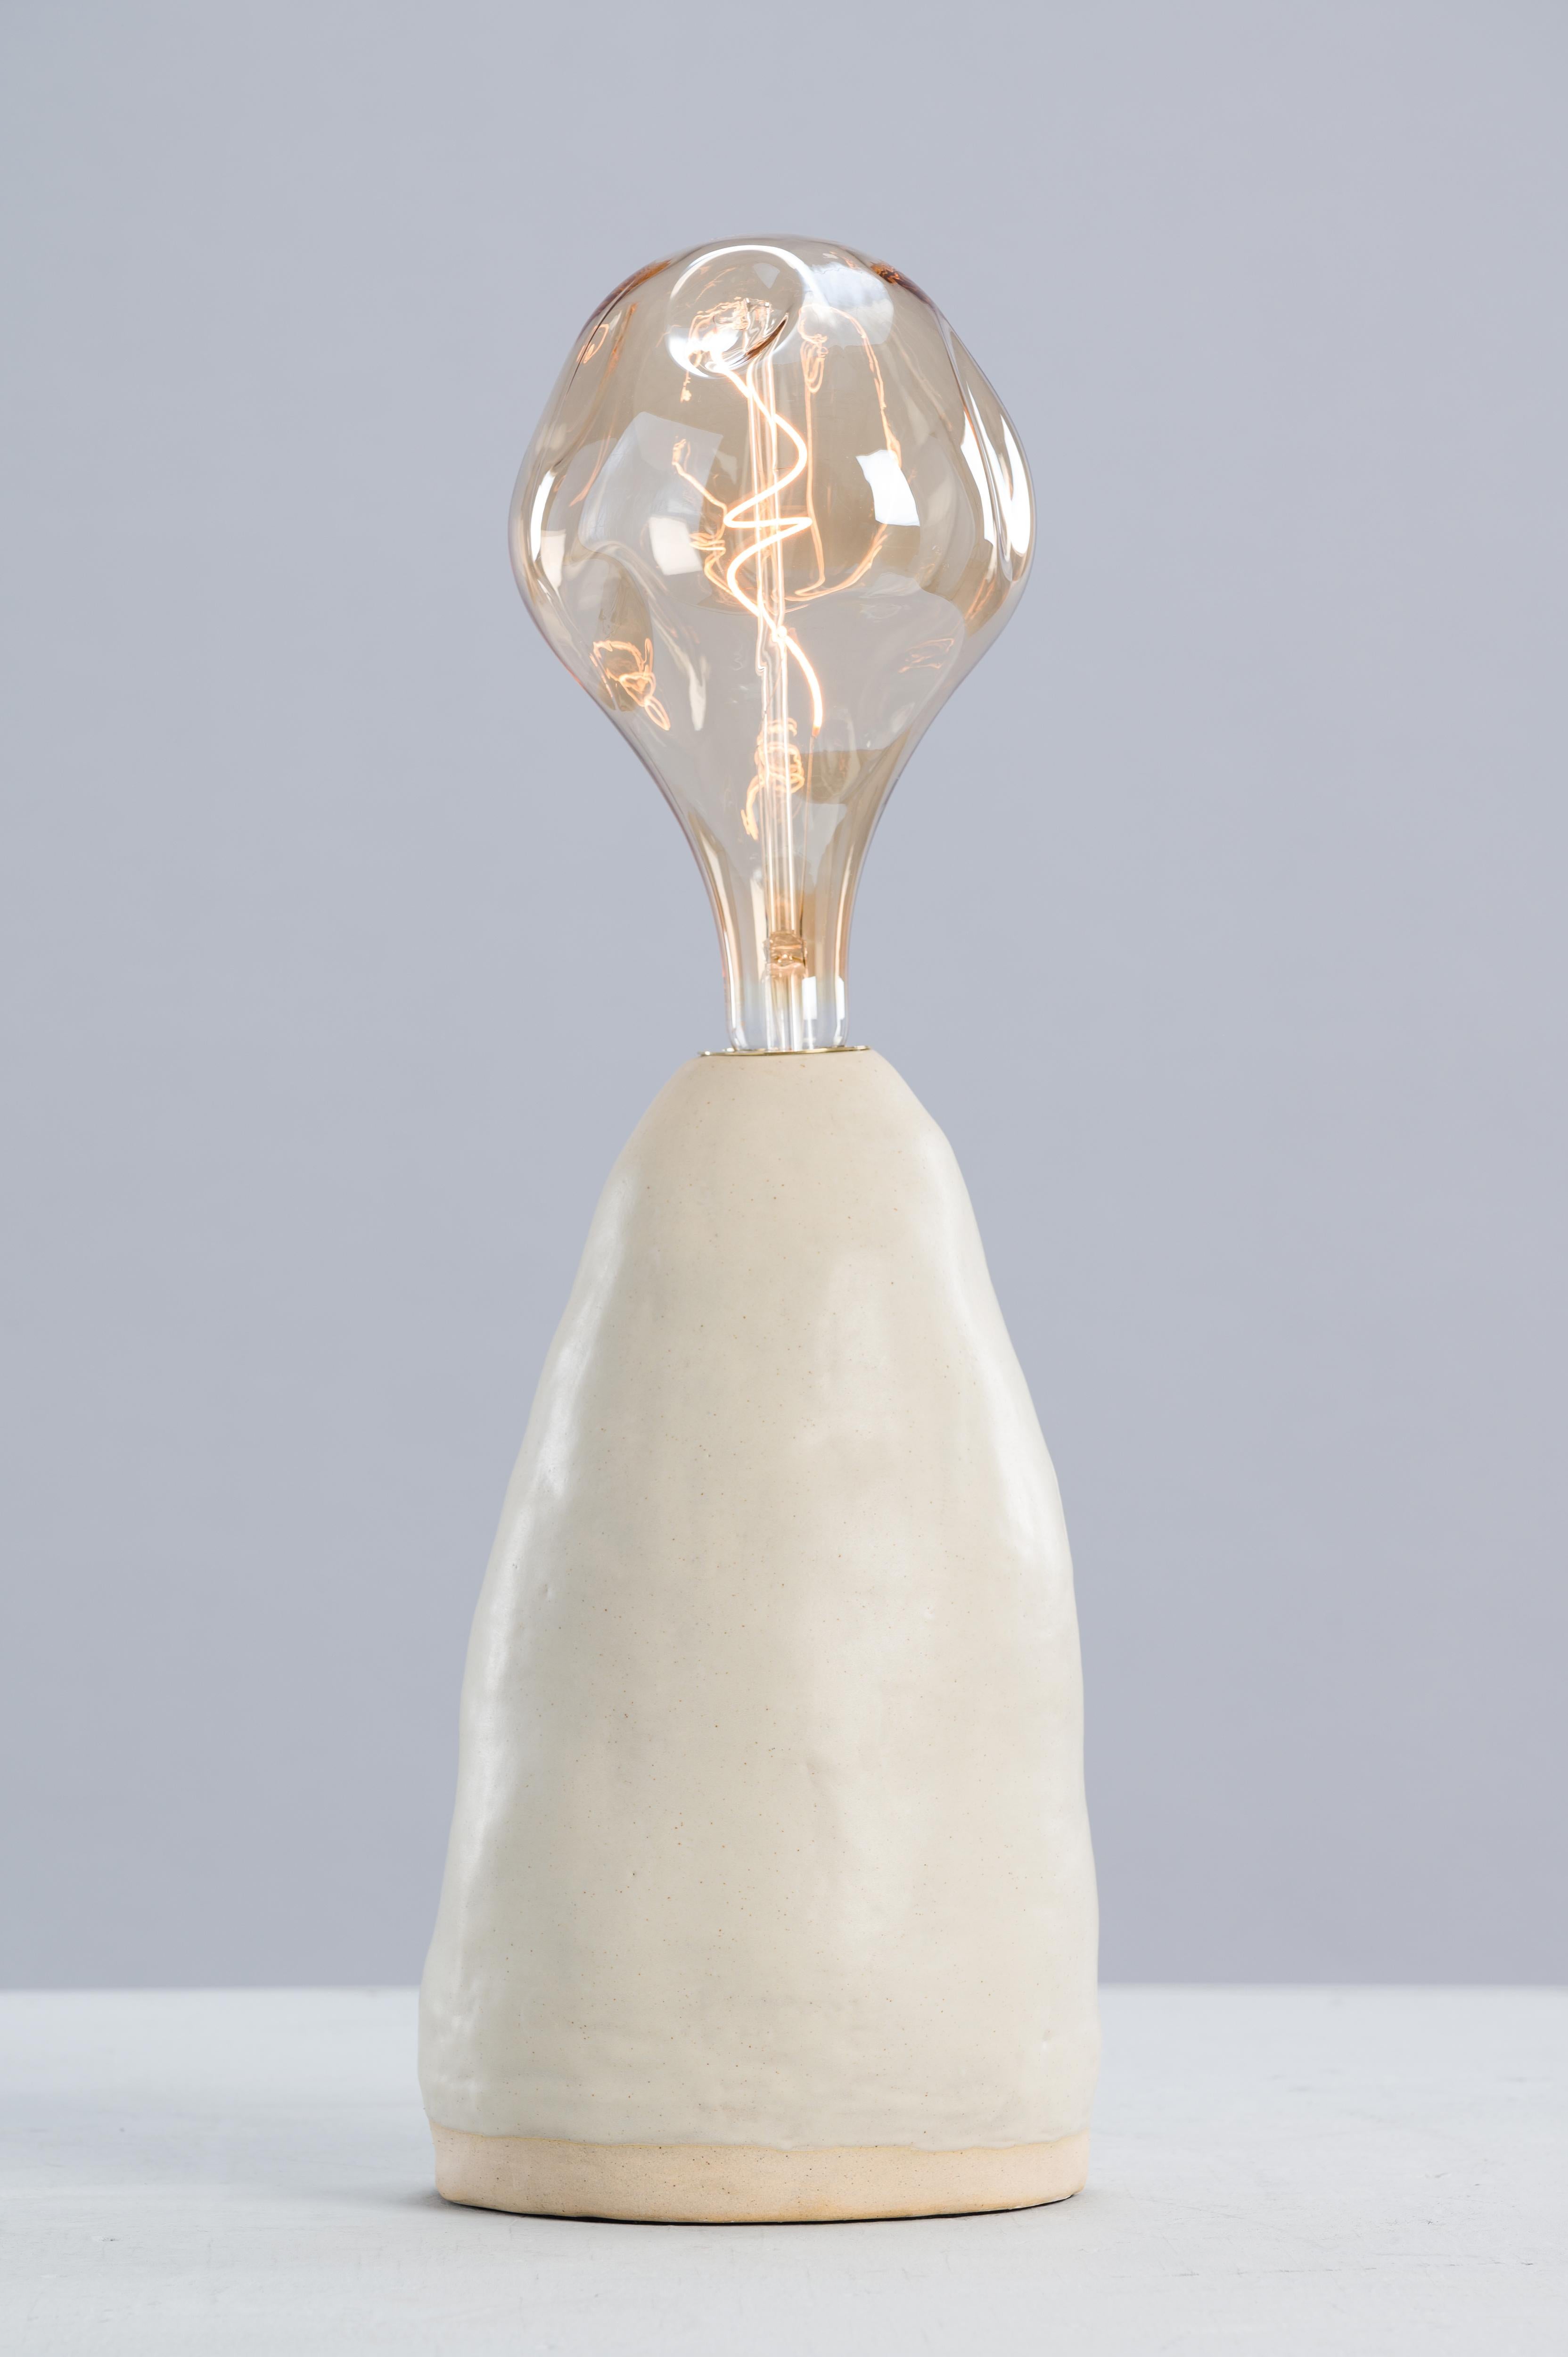 Lampe simple de Sophie Rogers
Dimensions : D 20 x H 35 (base seule) / 72 (avec ampoule) cm
MATERIAL : grès blanc, émail crème mat, laiton vieilli
Spécifications de l'ampoule : 6W, E27, 340 Lumens, dimmable
Grès noir et émail noir également